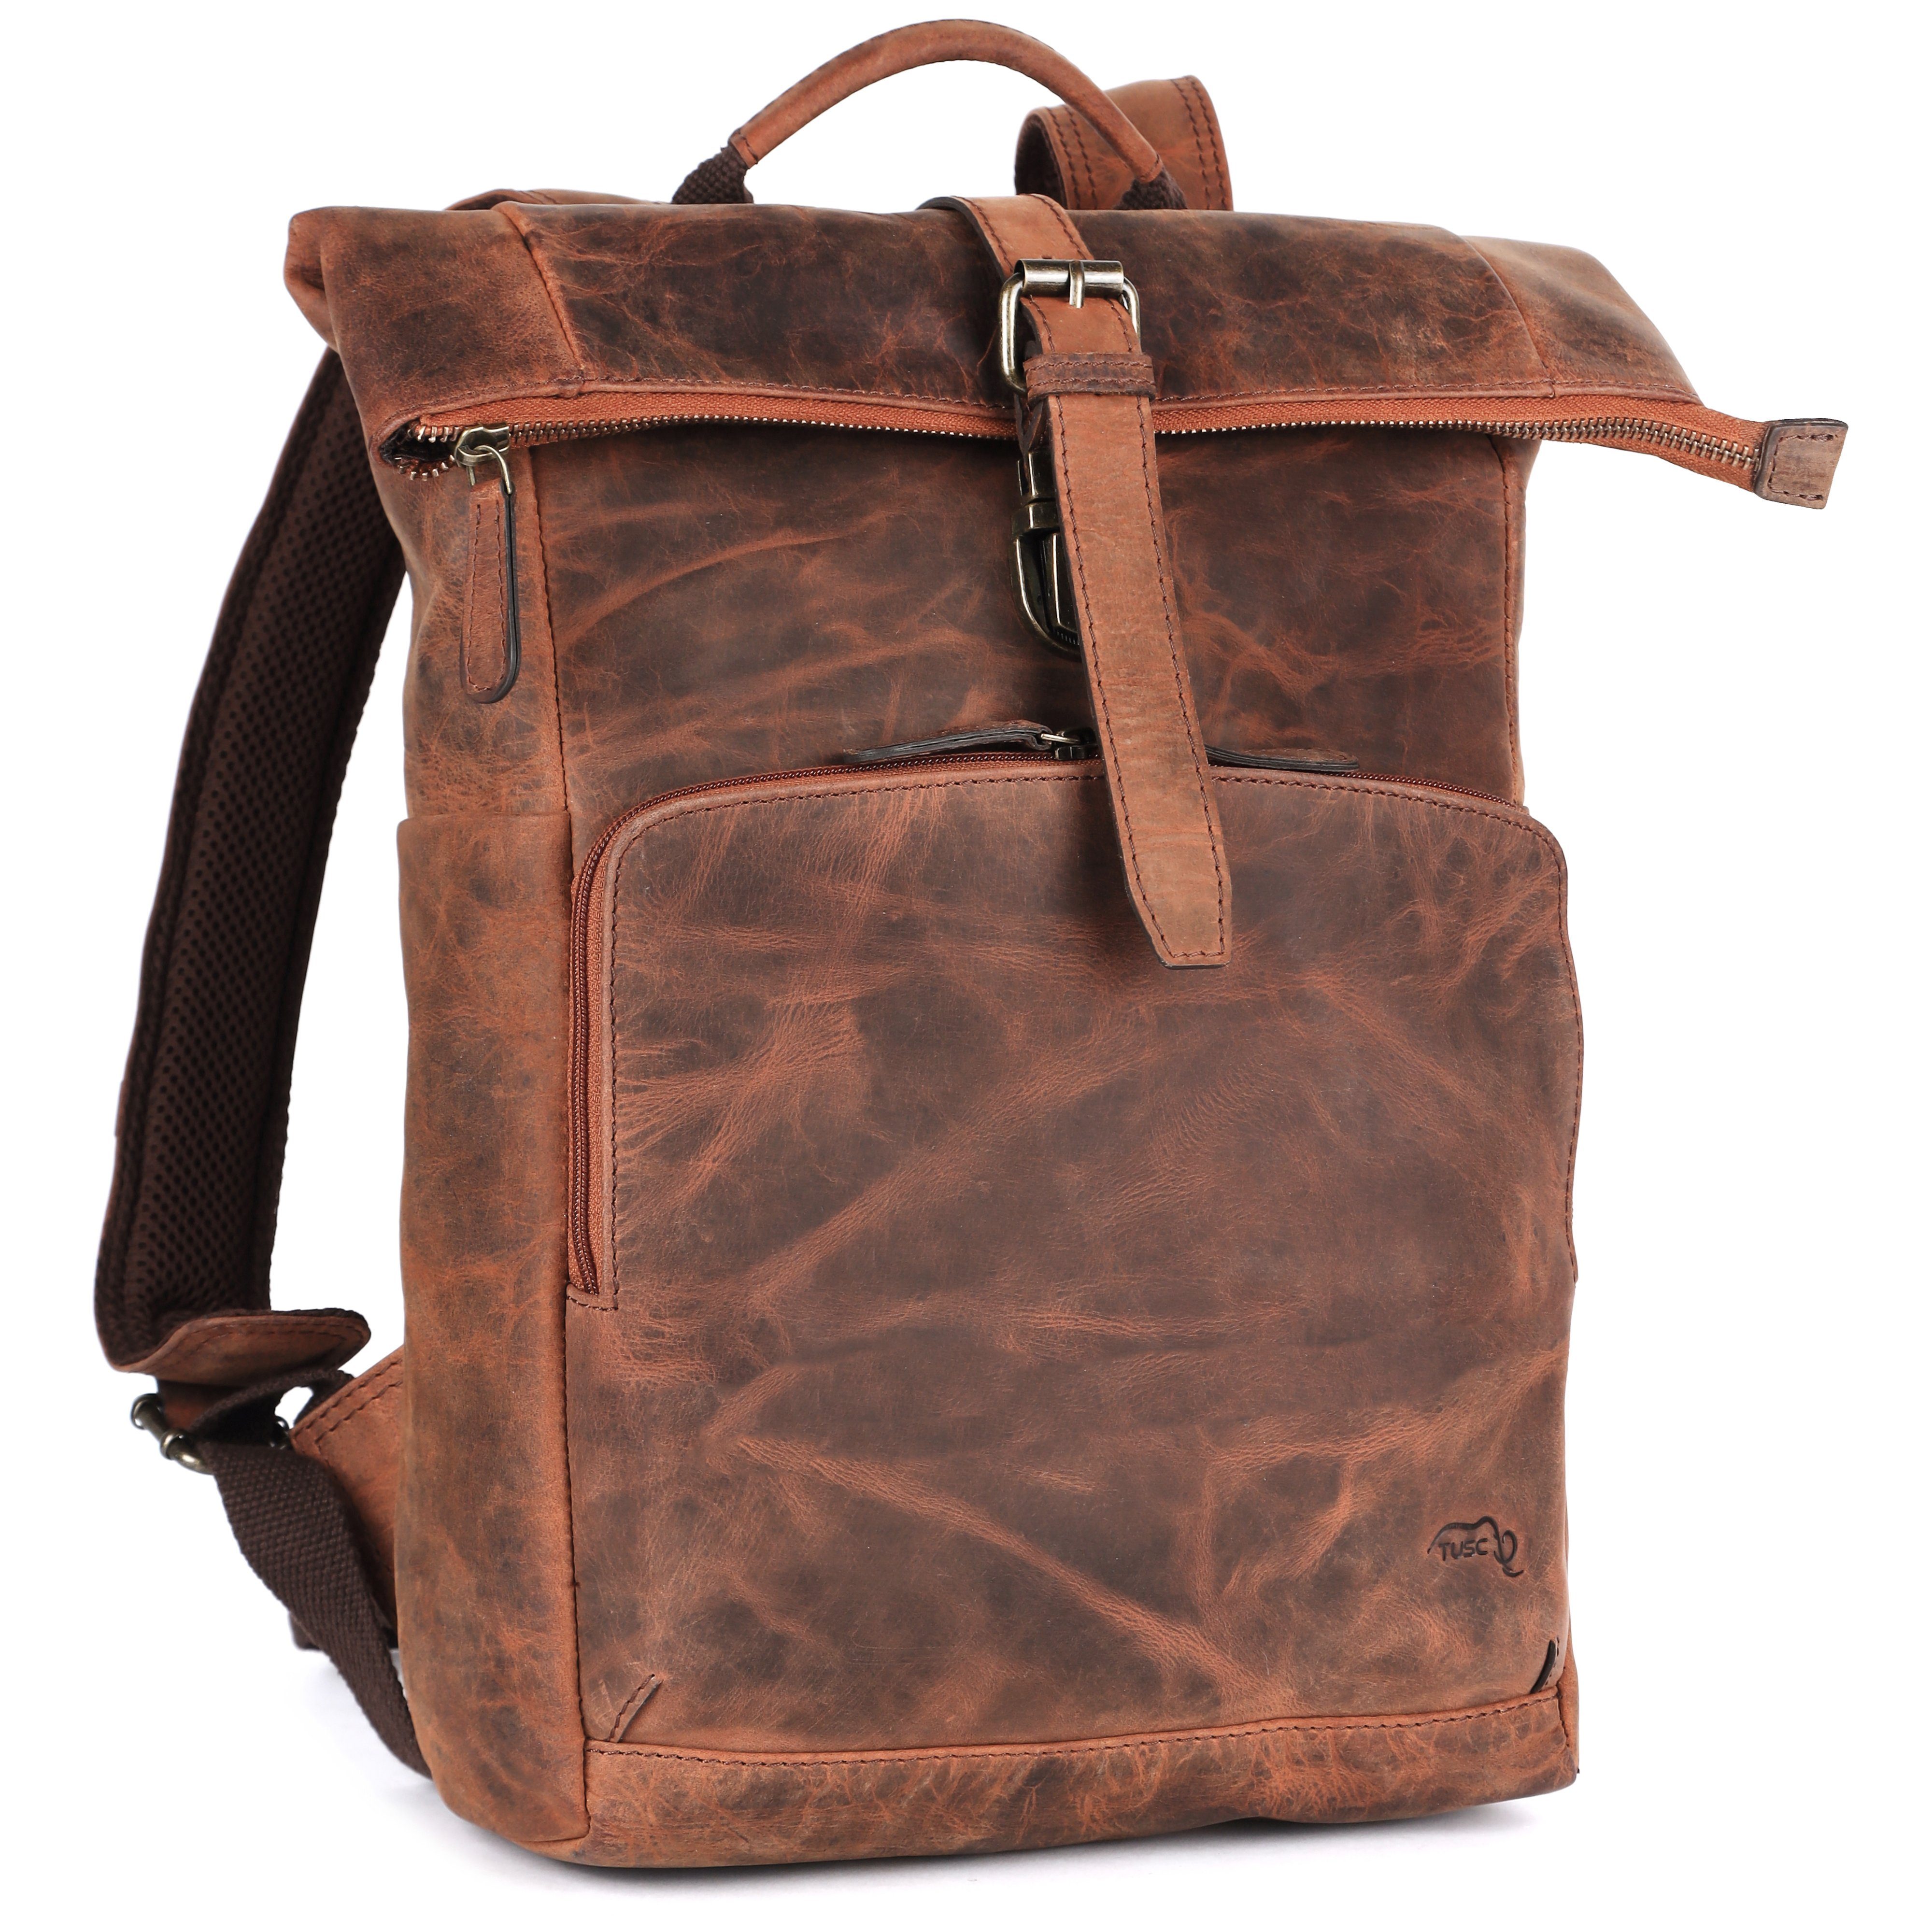 TUSC Rucksack Naos, Premium Rolltop Rucksack aus Leder für Laptop bis 13,3 Zoll. | Rucksacktaschen